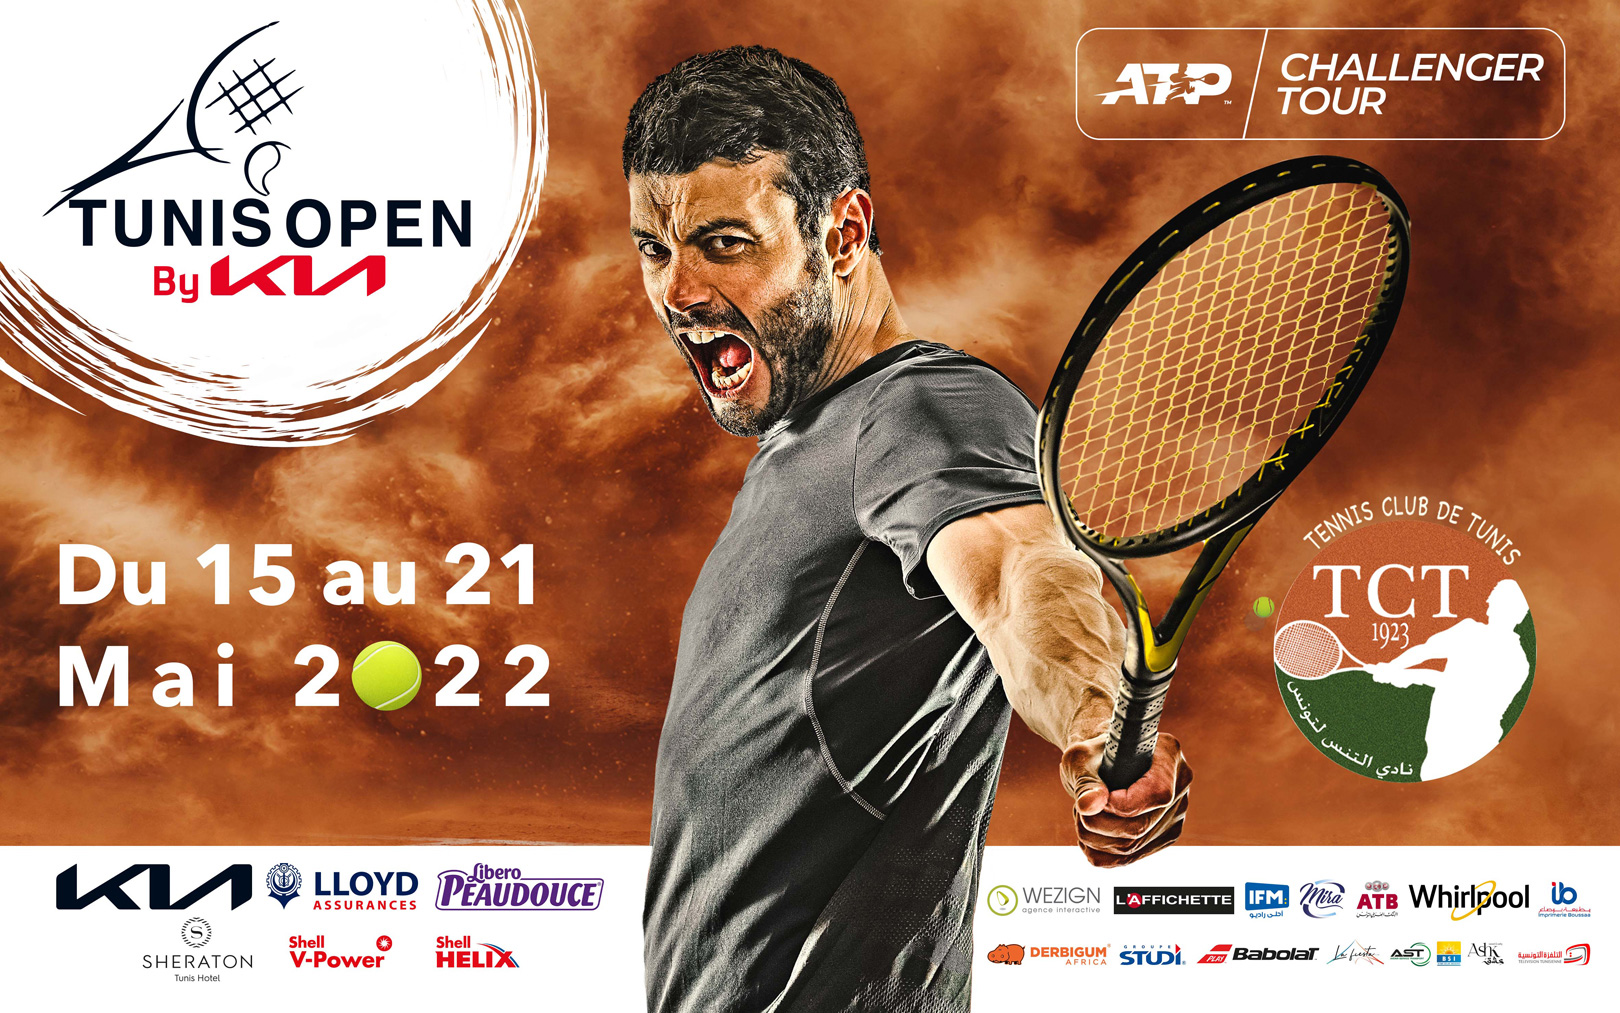 Tunis Open by KIA, une compétition incontournable qui marque l’ancrage de la marque KIA dans son soutien au Tennis